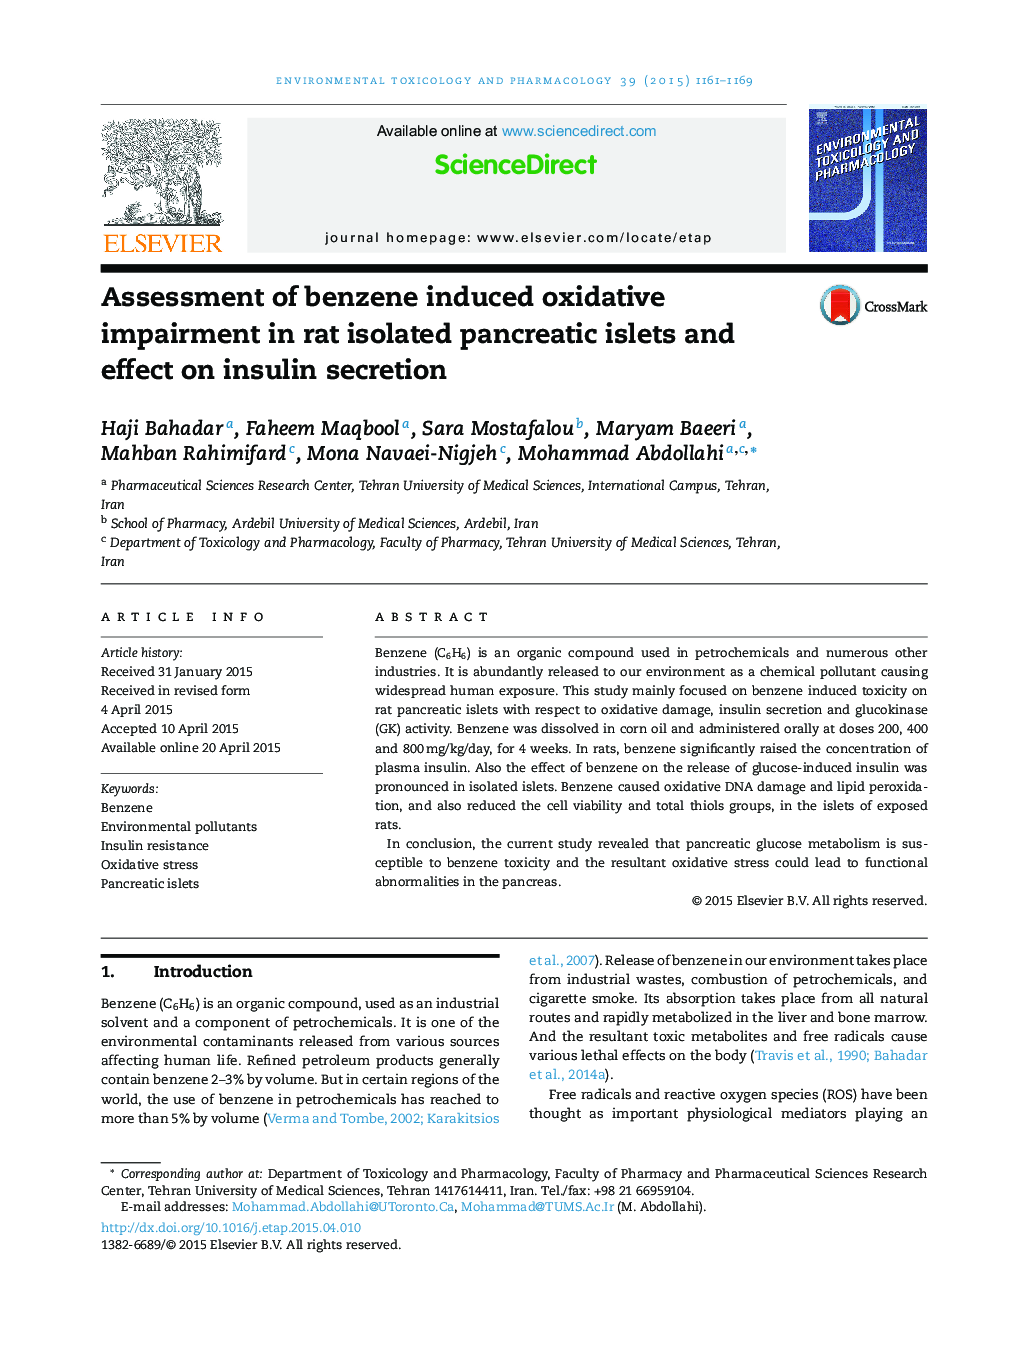 ارزیابی اختلالات اکسیداتیو ناشی از بنزن در جزایر پانکراس جدا شده از موش و تأثیر آن بر ترشح انسولین 